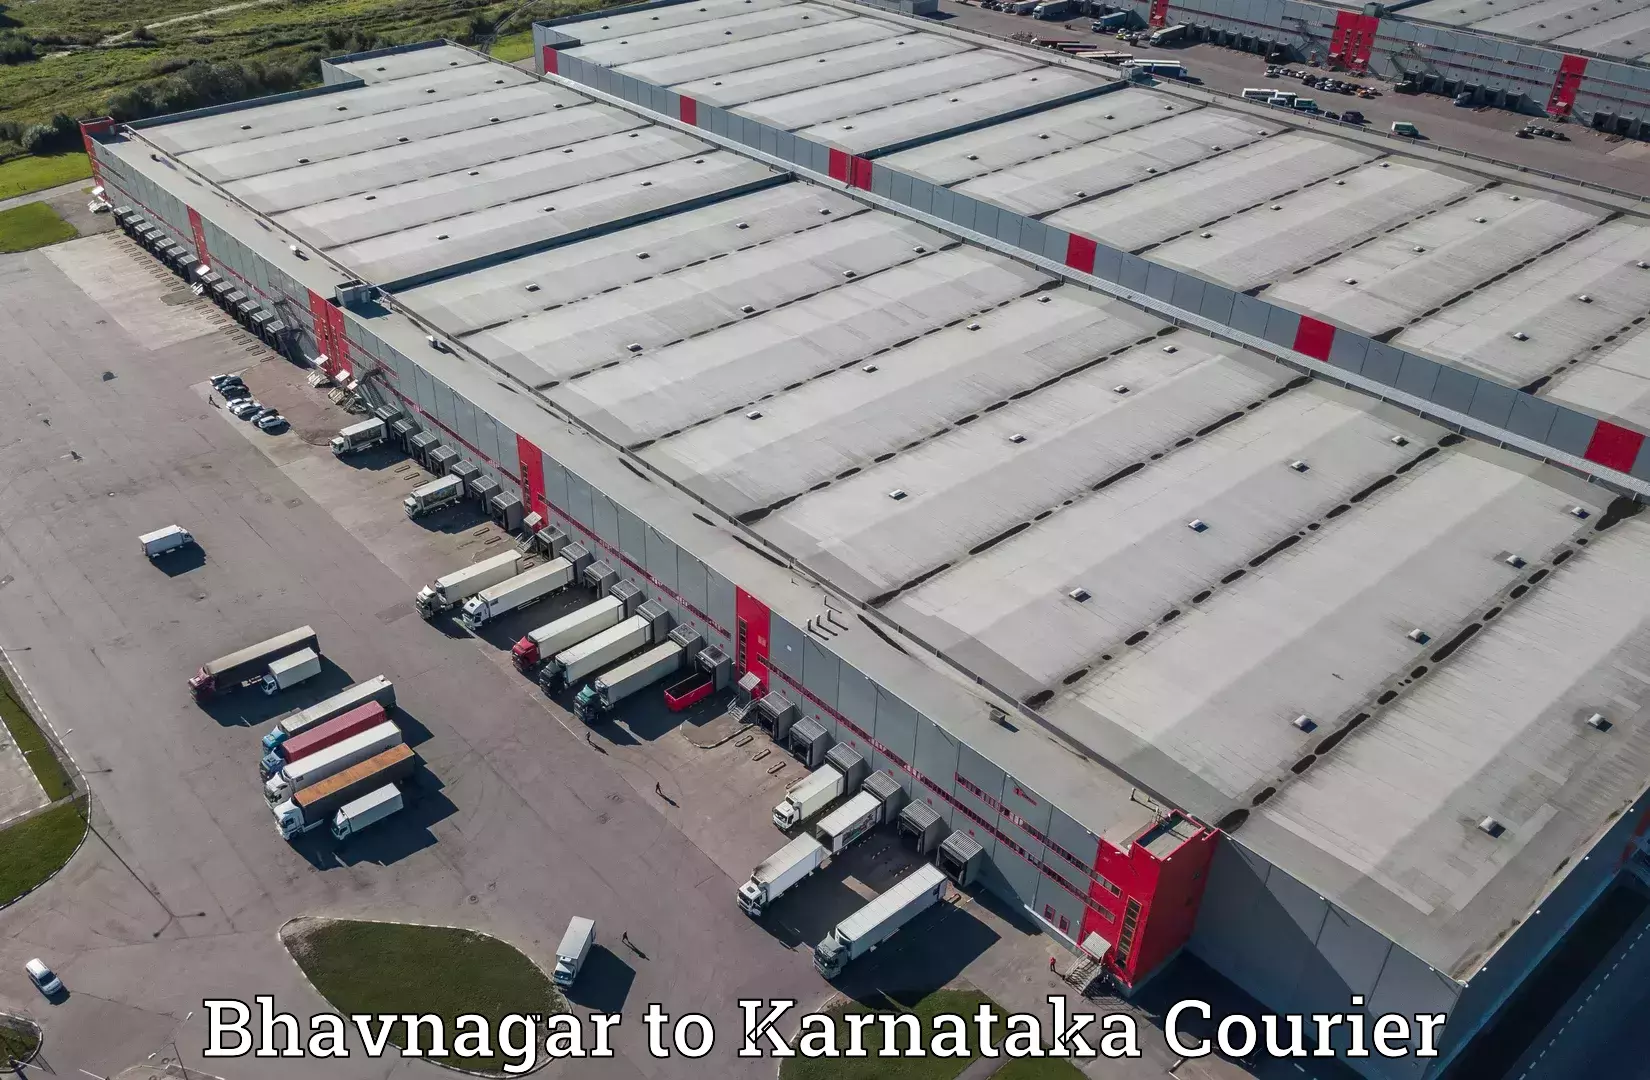 Global logistics network Bhavnagar to IIIT Dharward